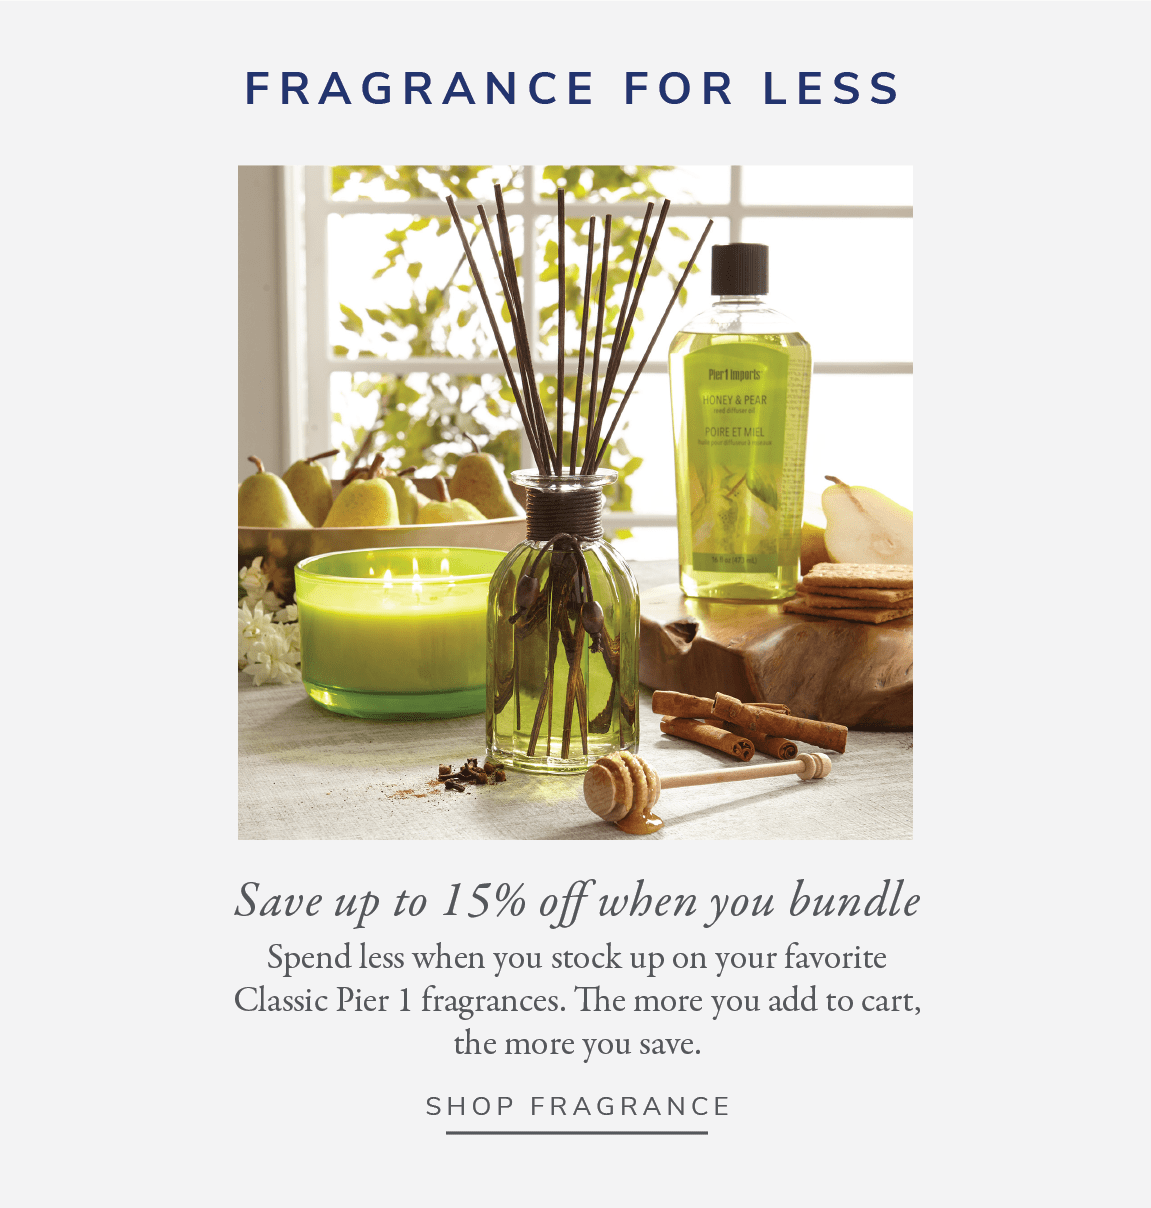 Fragrance for less